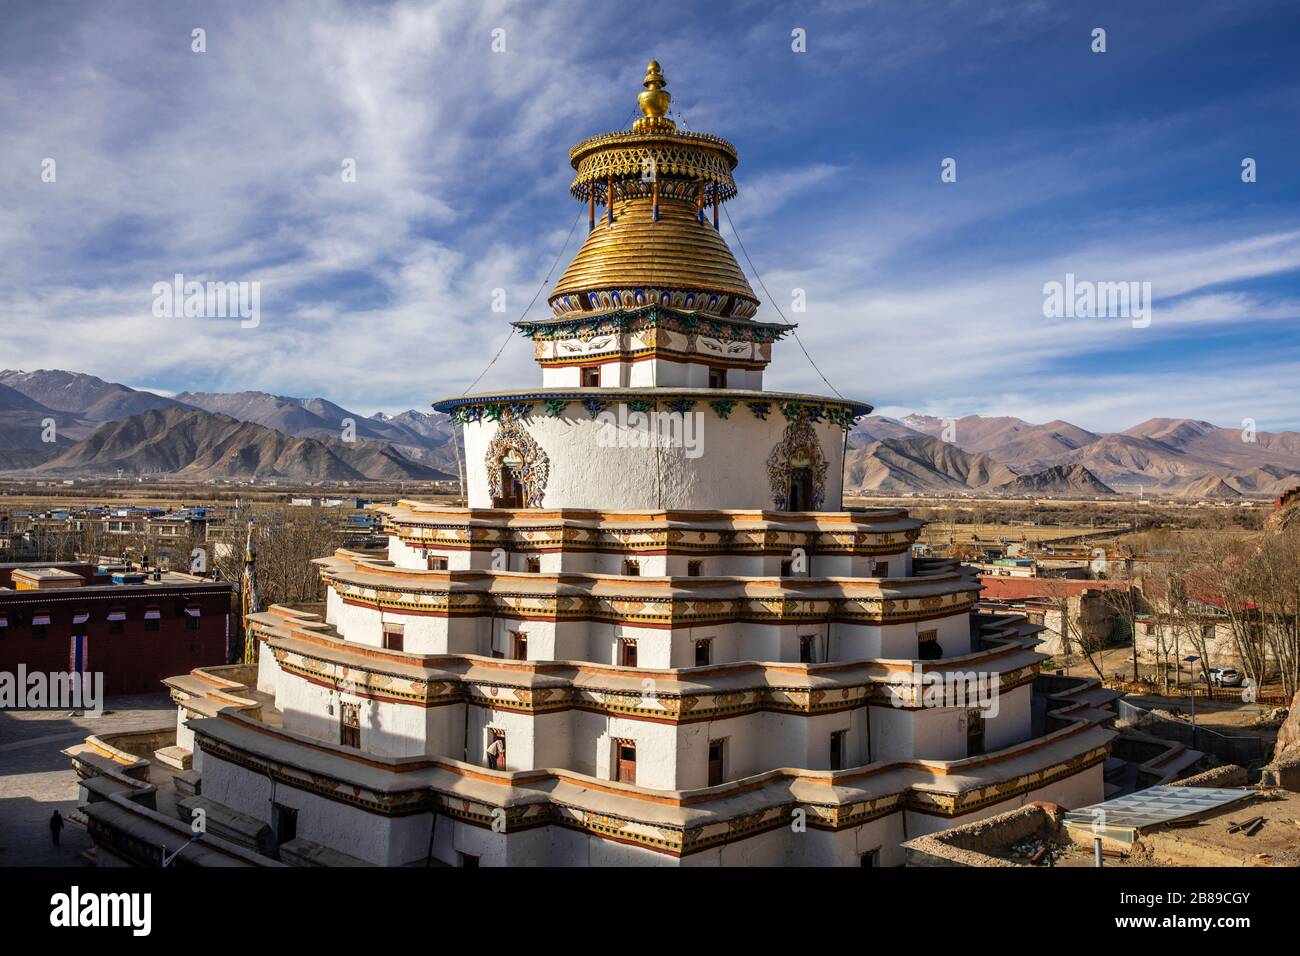 Kum Bum Chorten pyramide pièce maîtresse à Gyangze, Tibet Banque D'Images